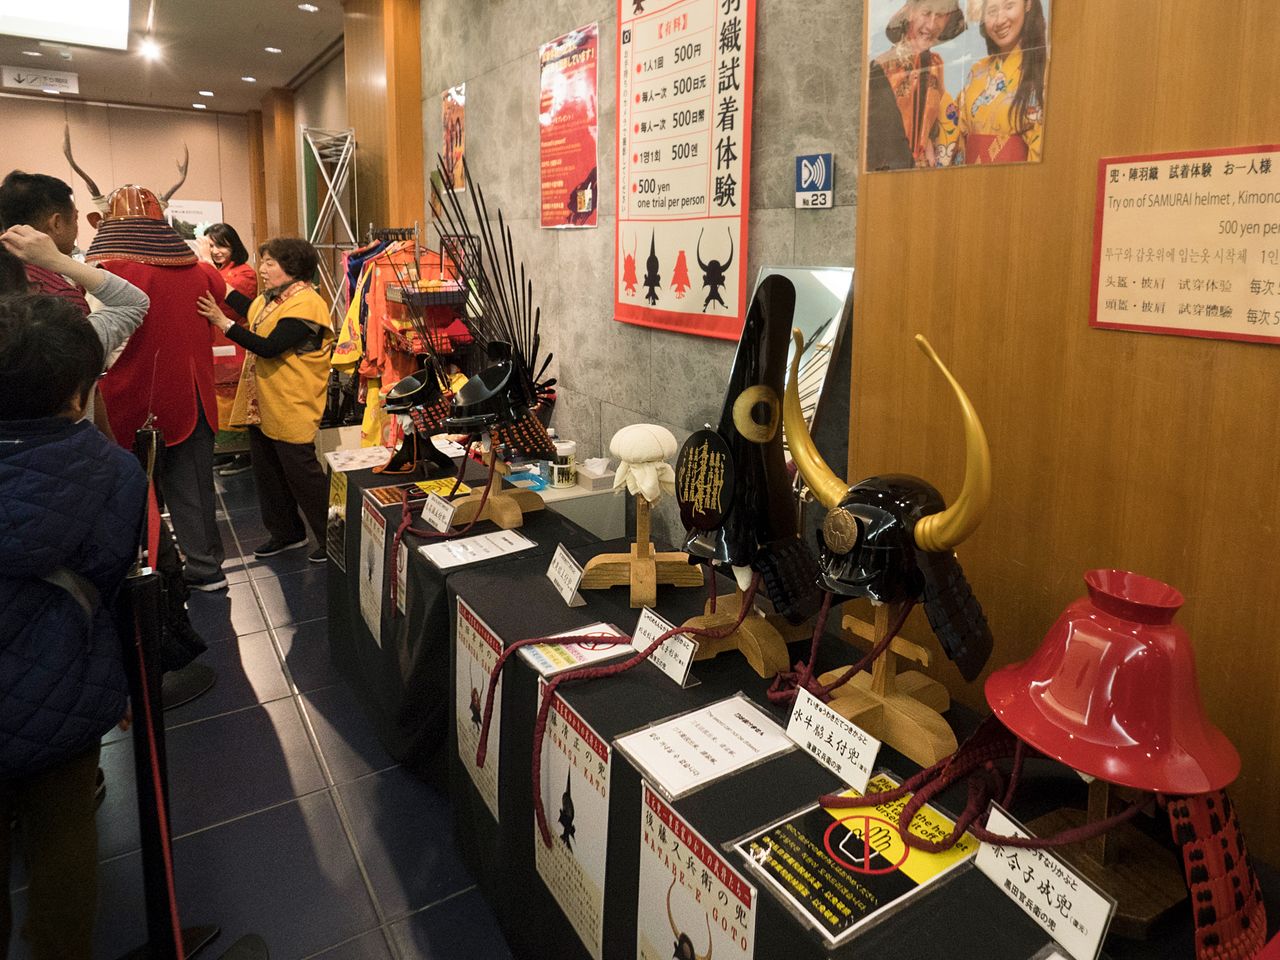 Hay una gran variedad de cascos disponibles para probarse. De derecha a izquierda, el casco del señor feudal Kuroda Kanbei, el del samurái Gotō Matabei, el de Katō Kiyomasa y el de Hideyoshi. Al fondo, un hombre probándose el de Sanada Yukimura. 